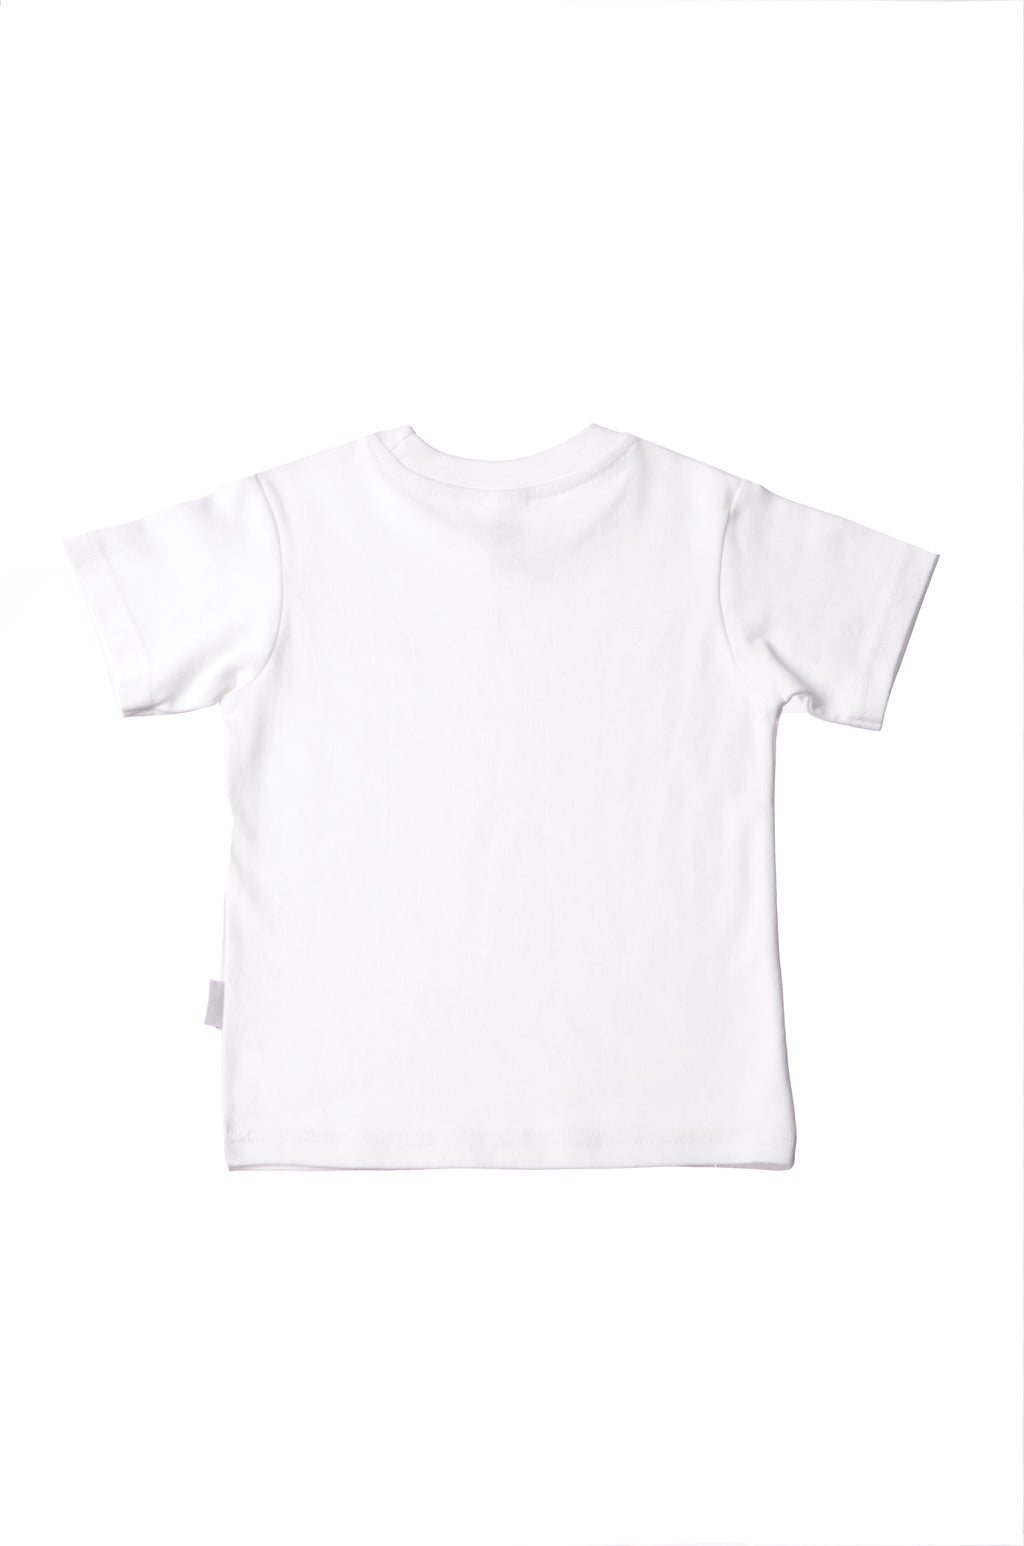 T-Shirt für Baby und Kleinkind von Liliput – Liliput